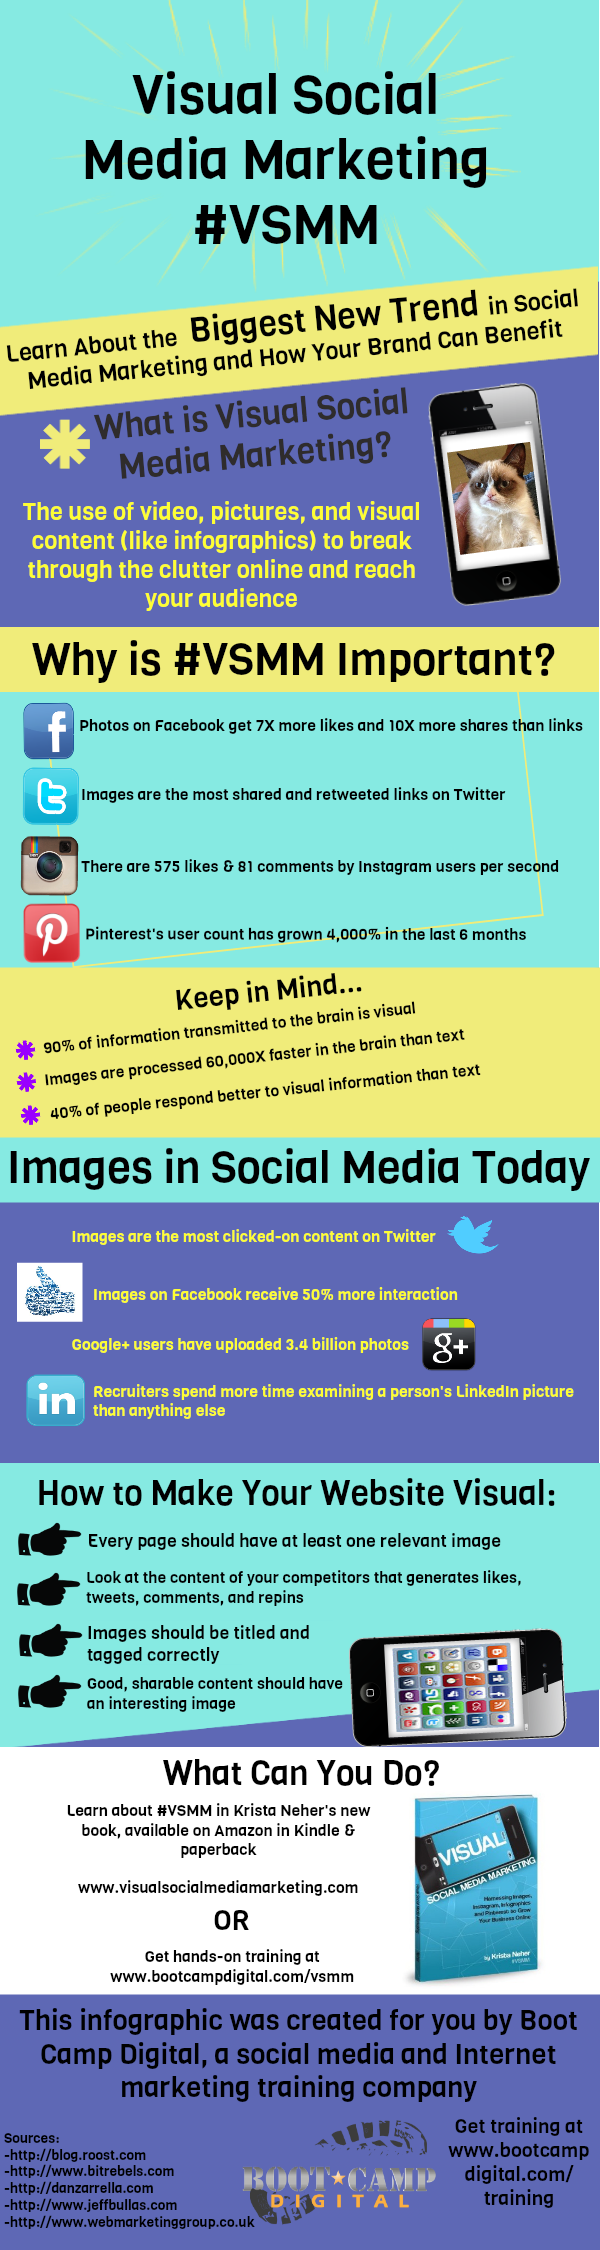 visual-social-media-marketing